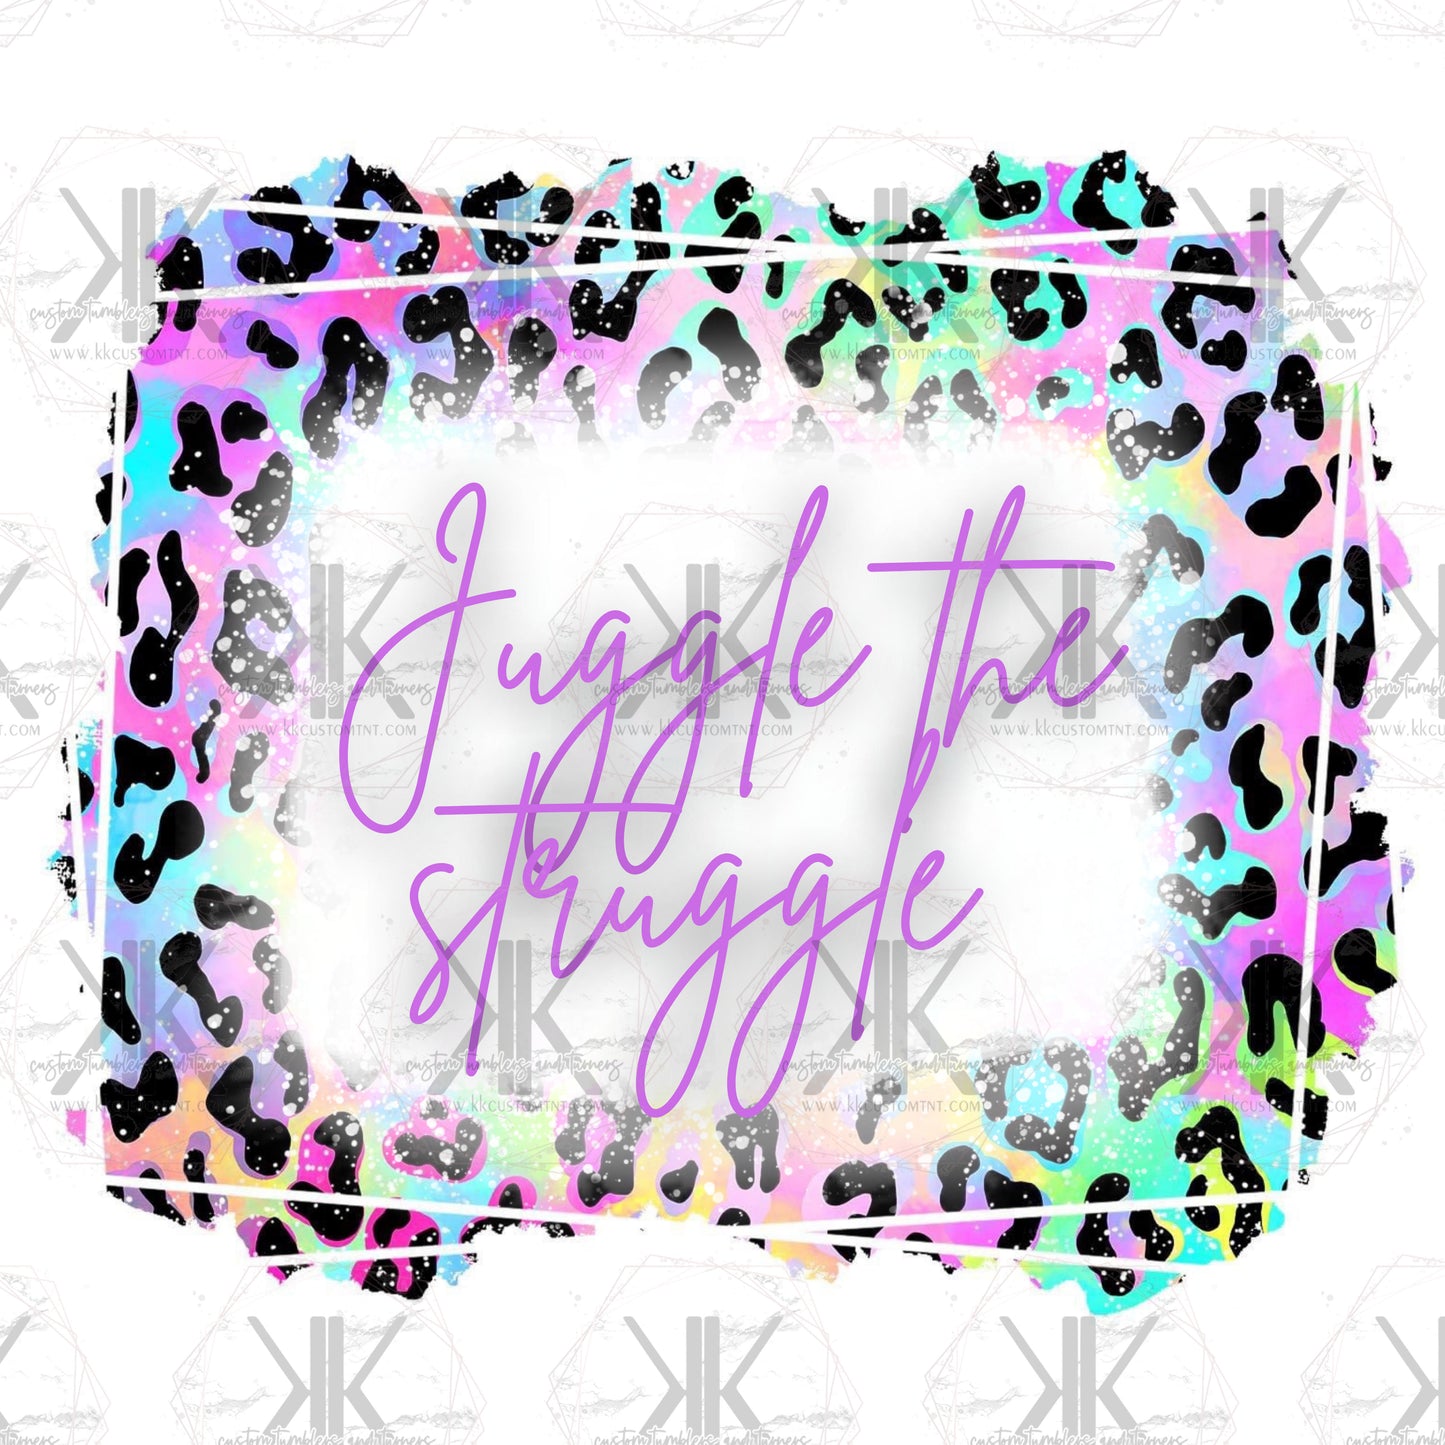 Juggle the Struggle PNG **Digital Download Only**